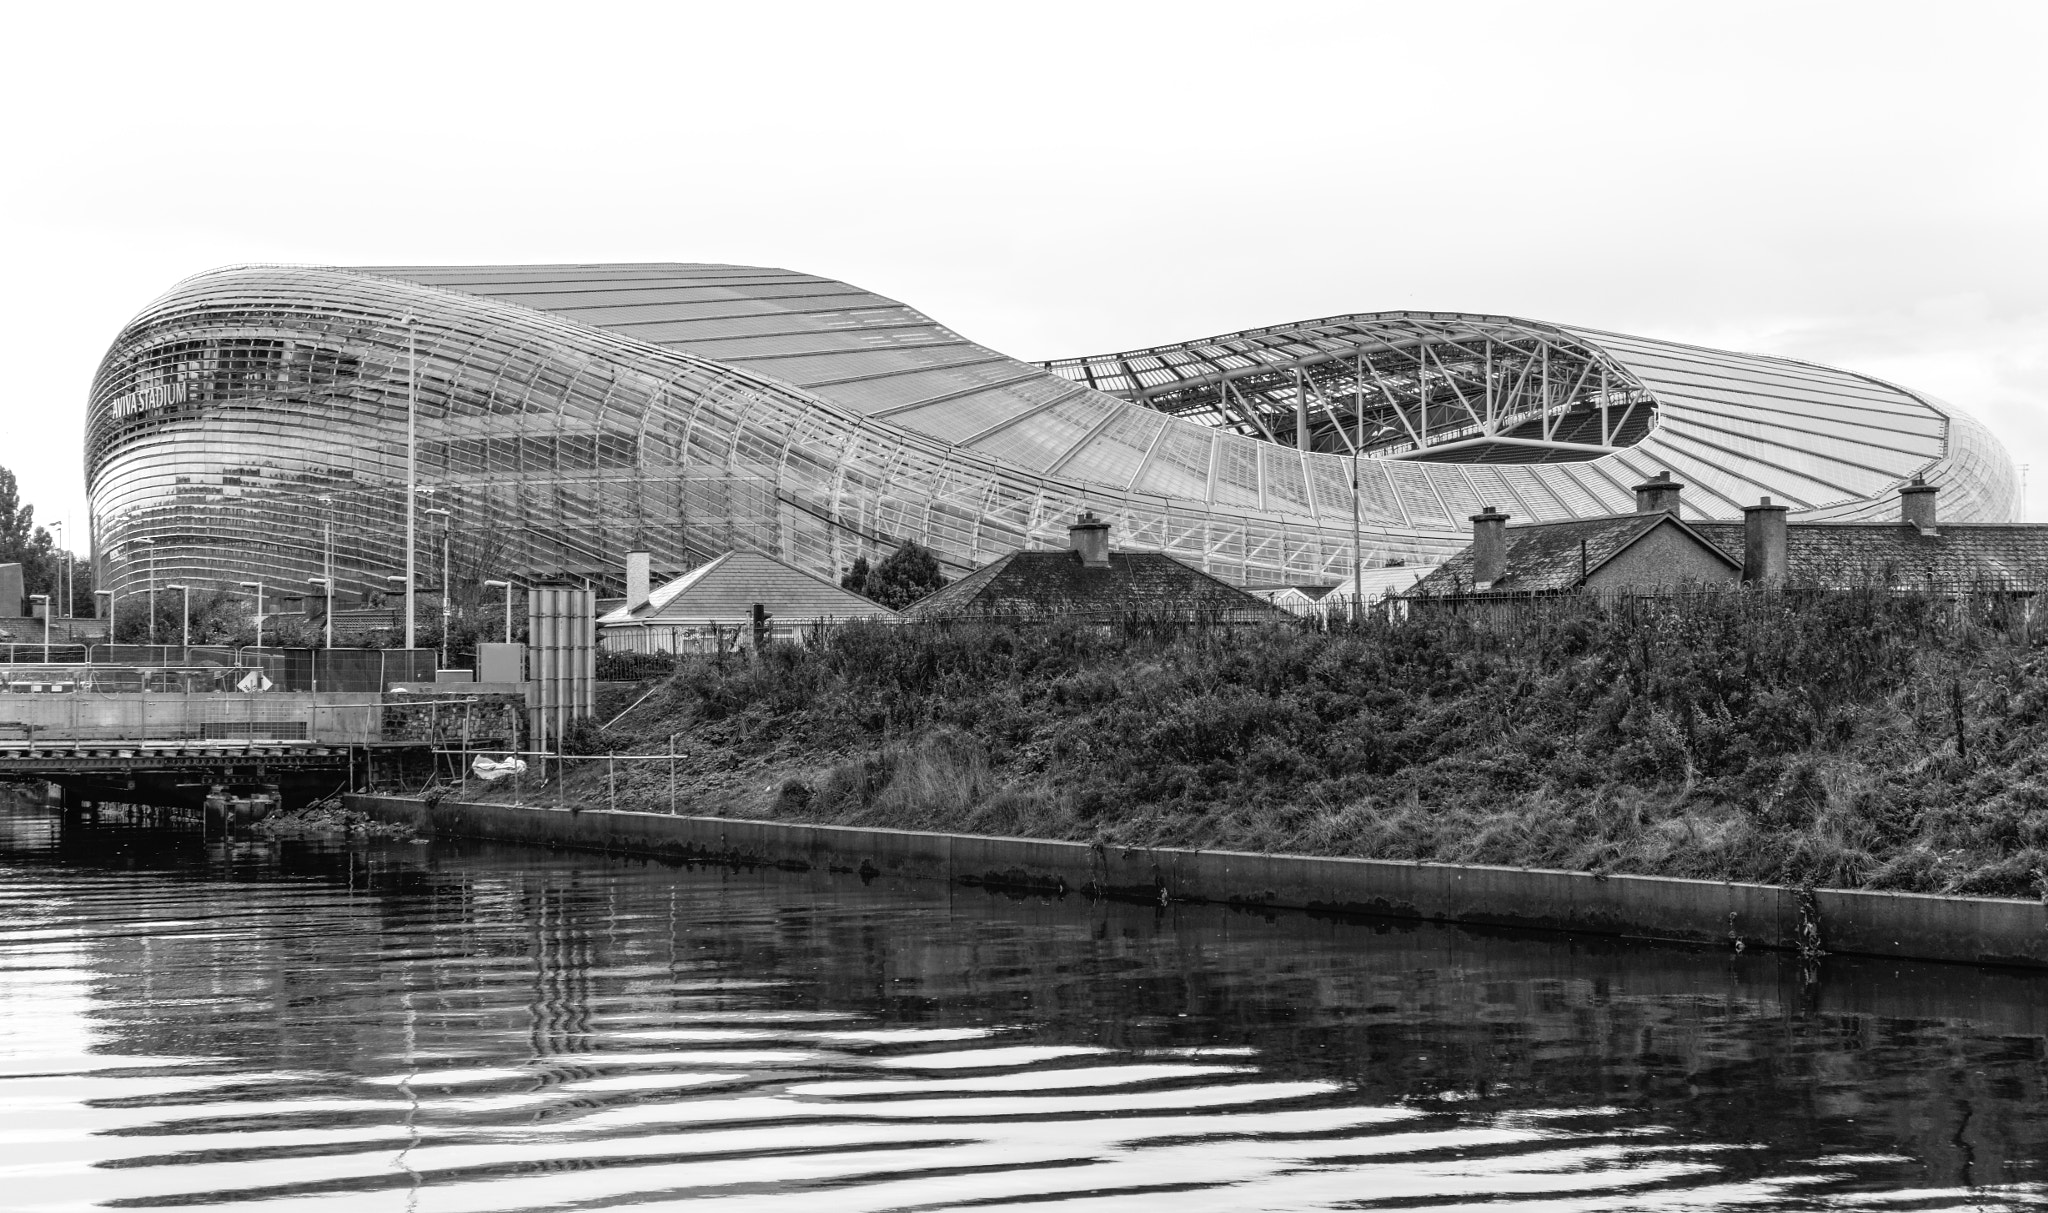 The Aviva Stadium in Black & White